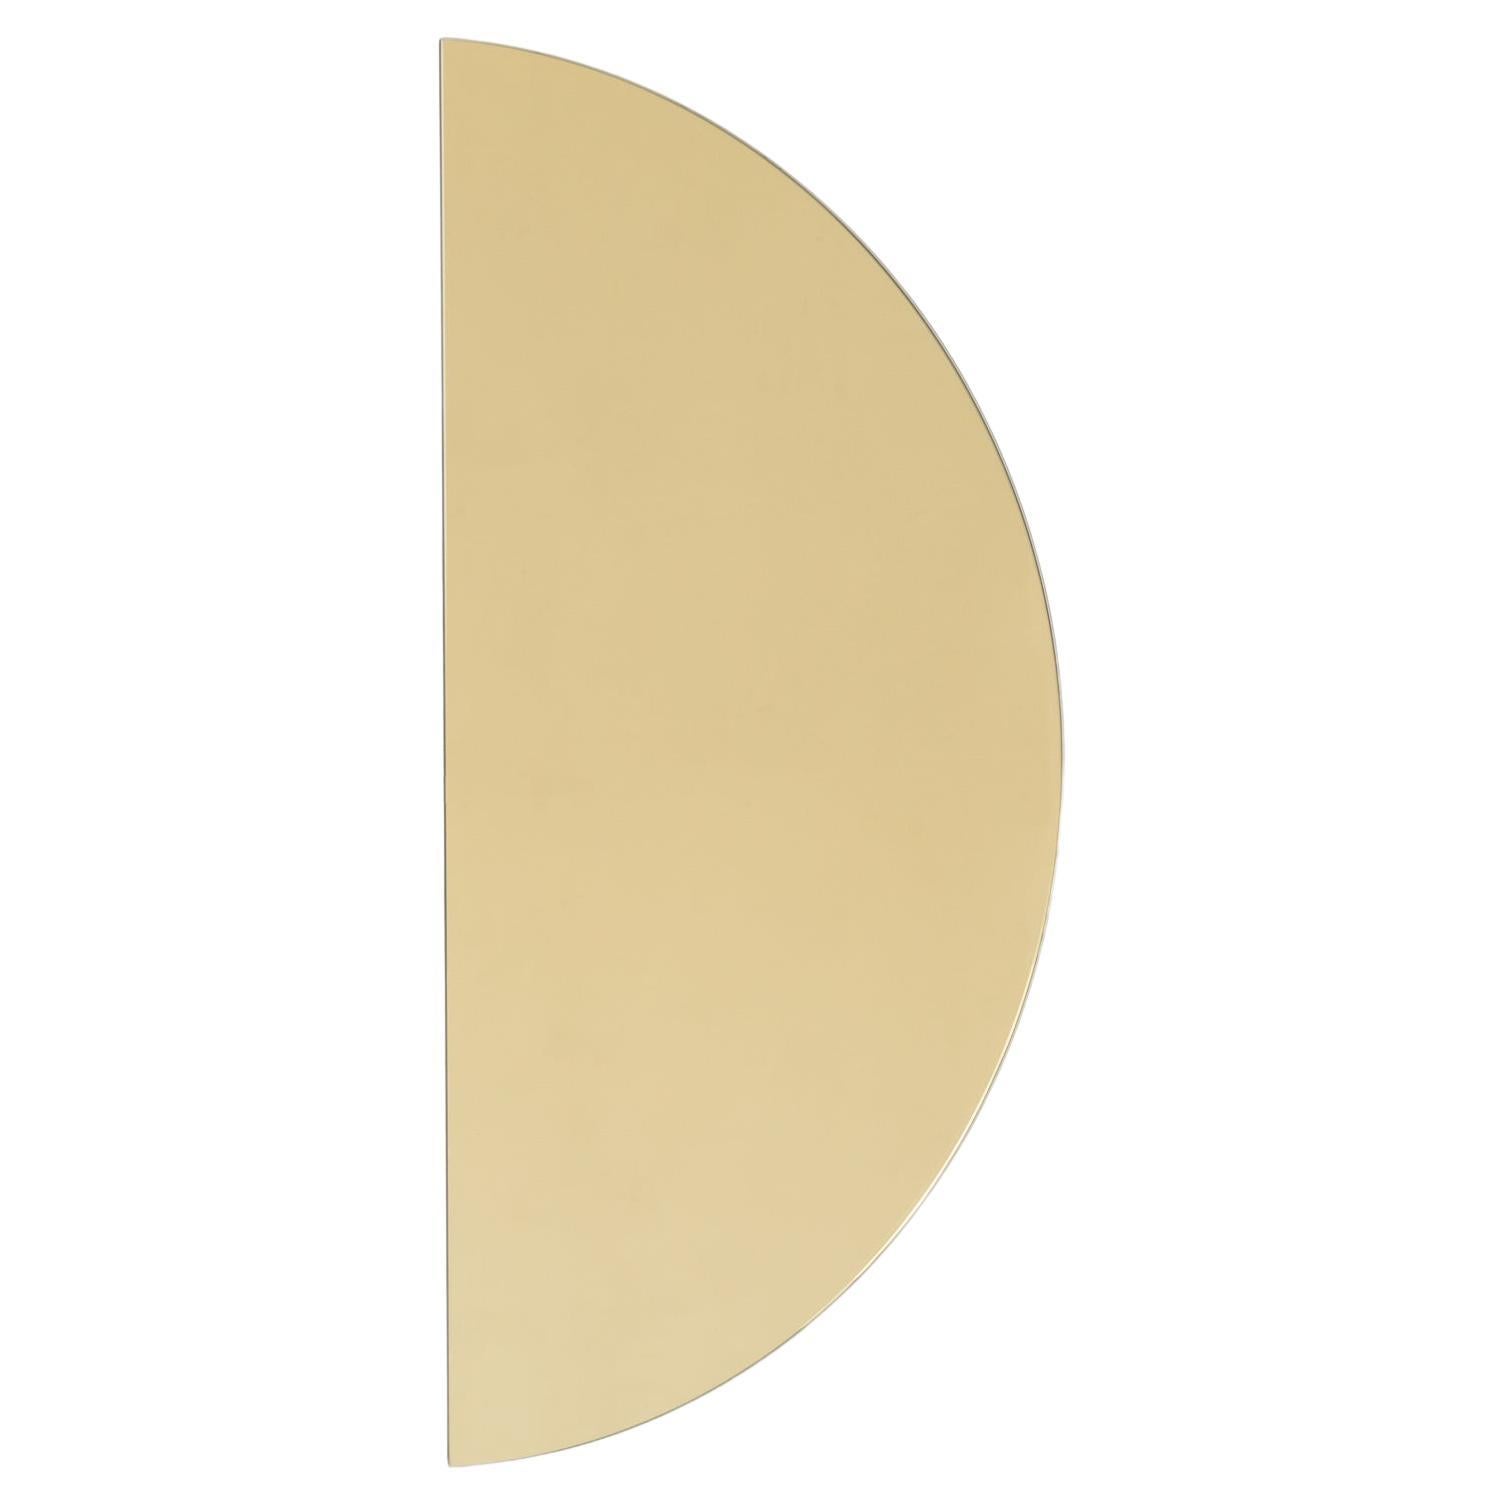 Luna Halbmond Gold getönter rahmenloser minimalistischer halbkreisförmiger Spiegel, Medium